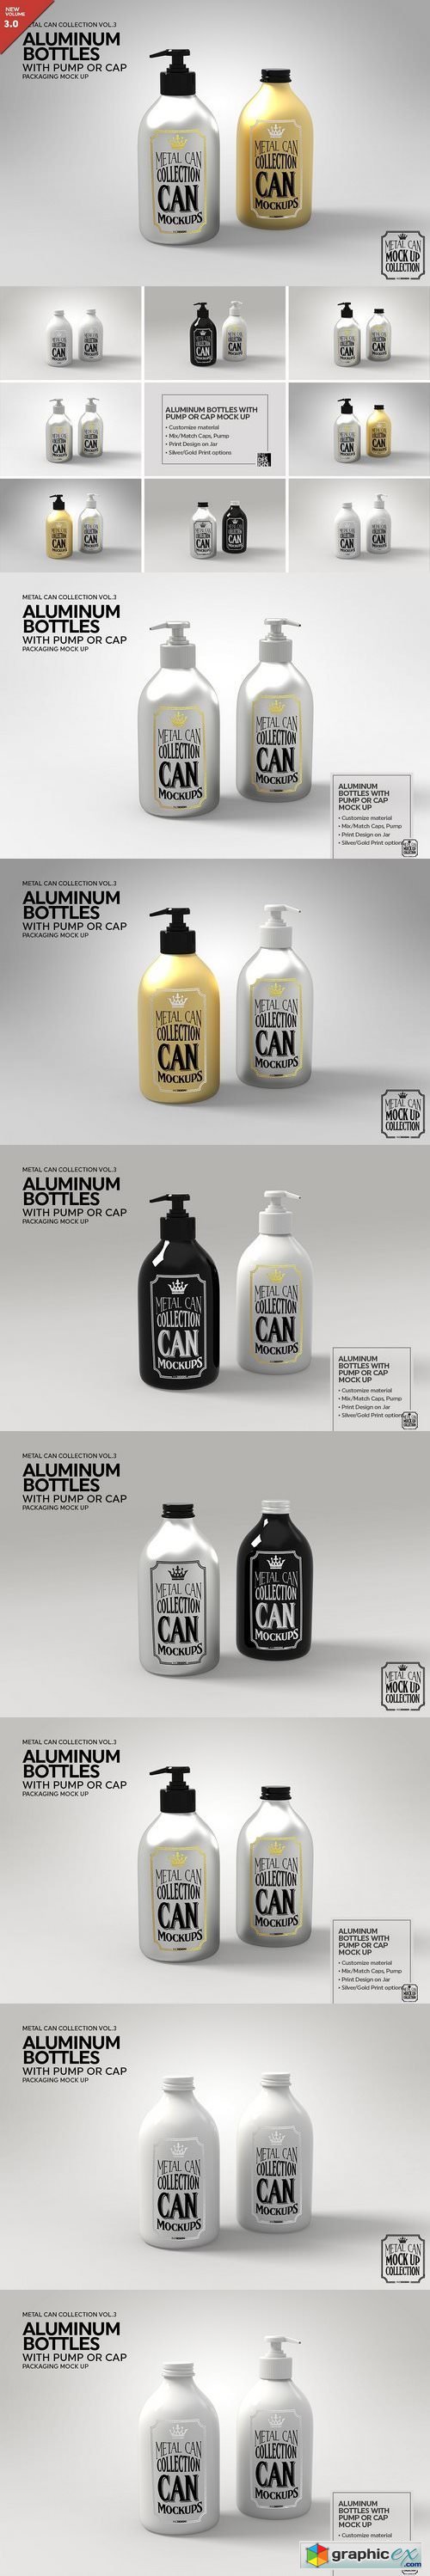 Aluminum Bottles Pump Cap MockUp